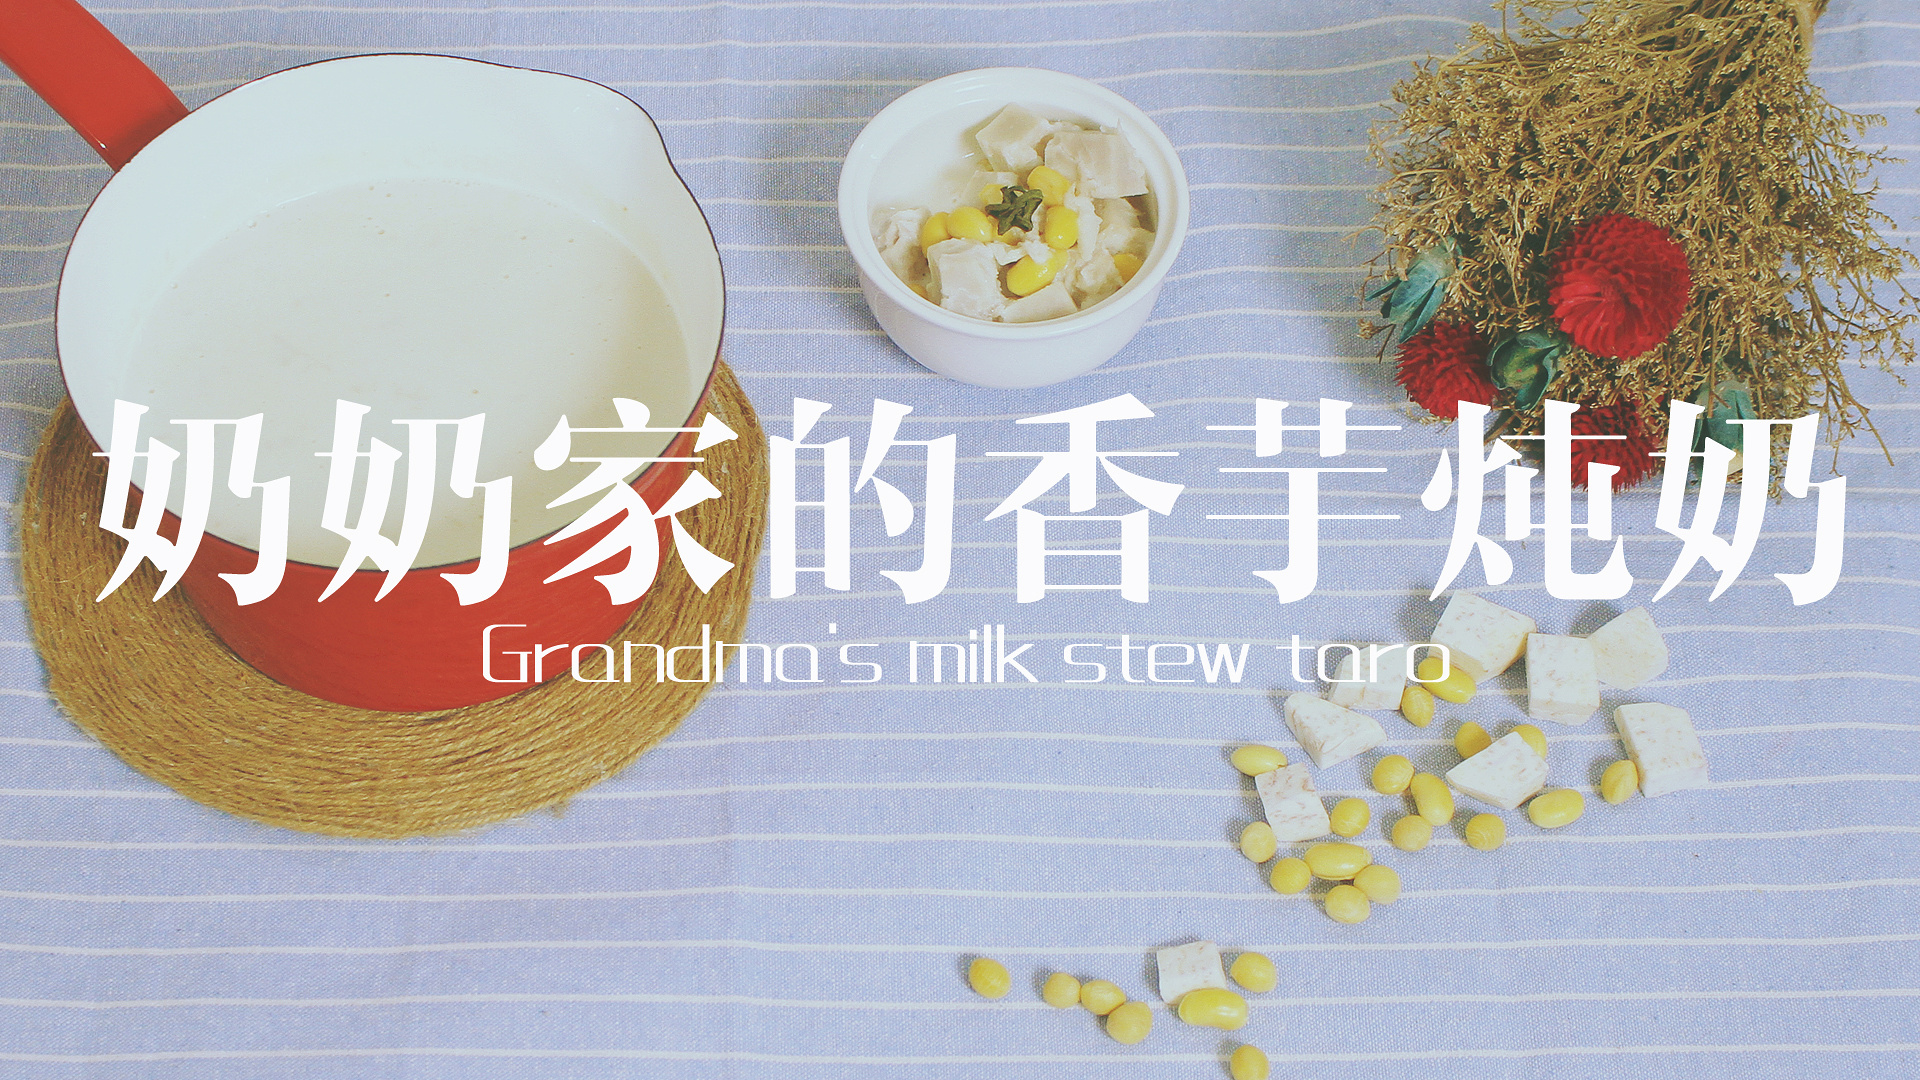 丨夏厨丨甜食控福利奶奶家的香芋炖奶 VOL.5的做法